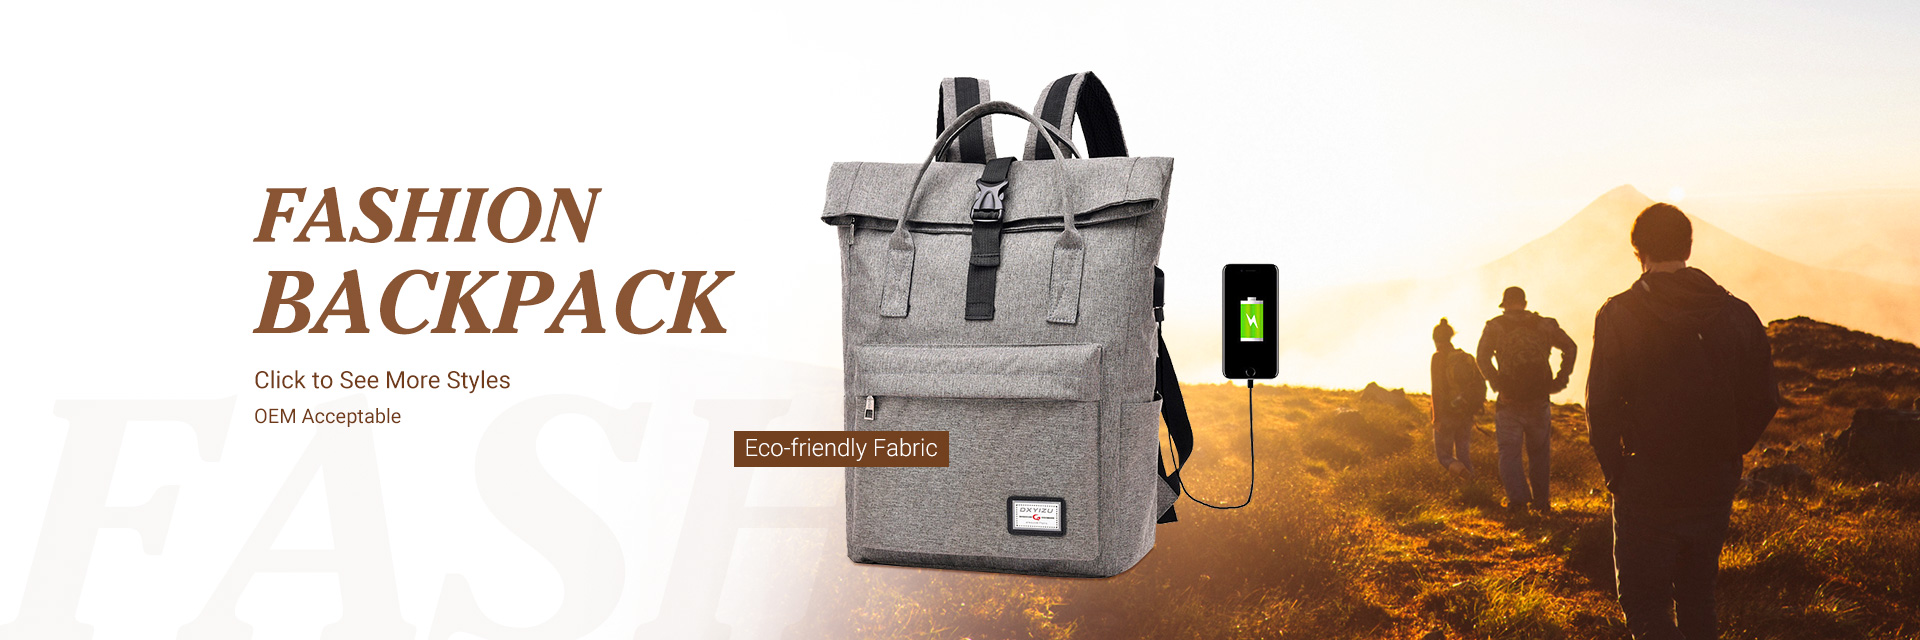 computer-bag-backpack